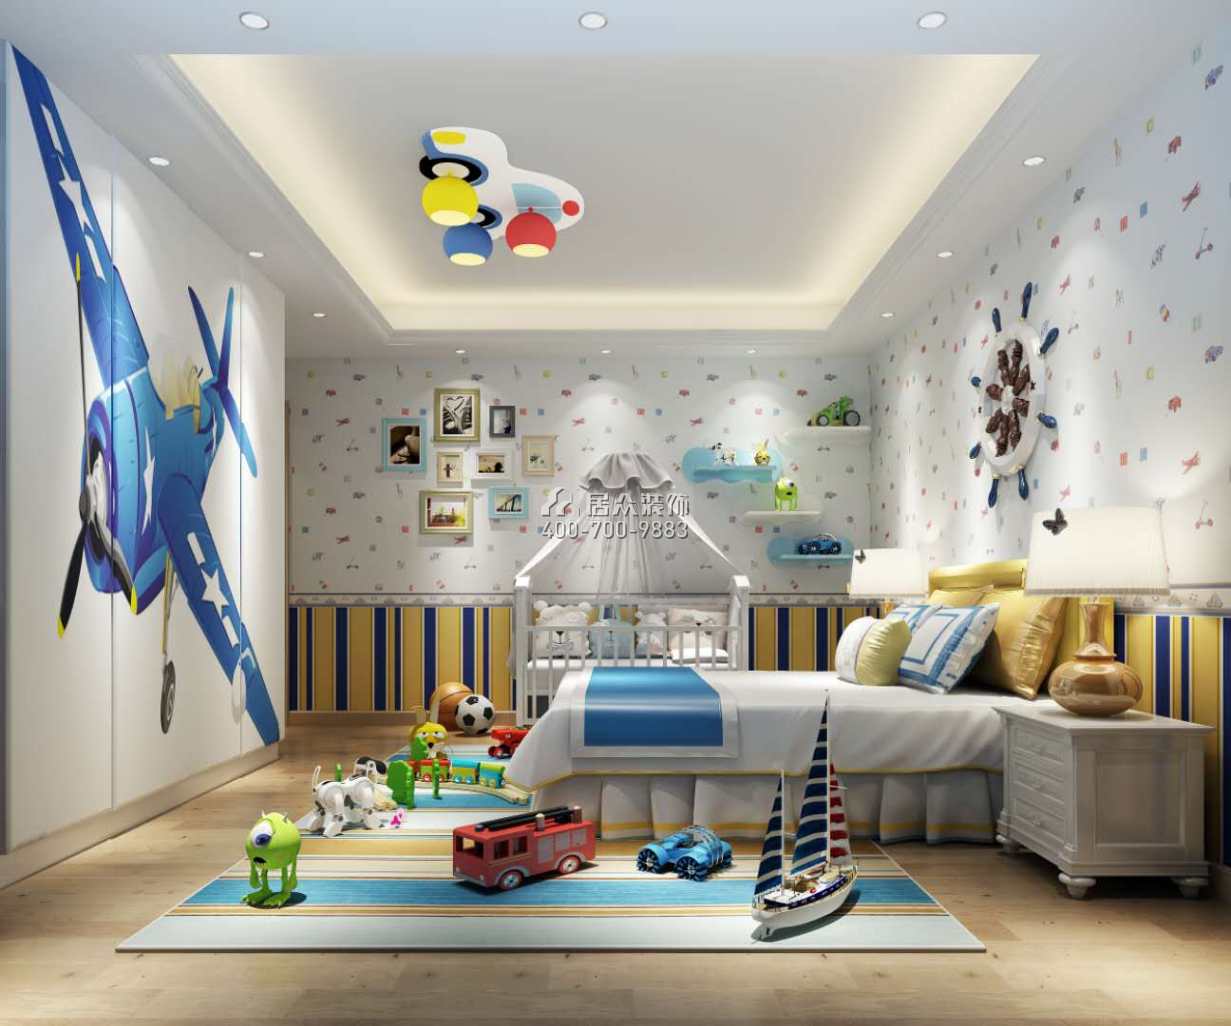 海逸豪庭尚都280平方米中式风格别墅户型儿童房装修效果图